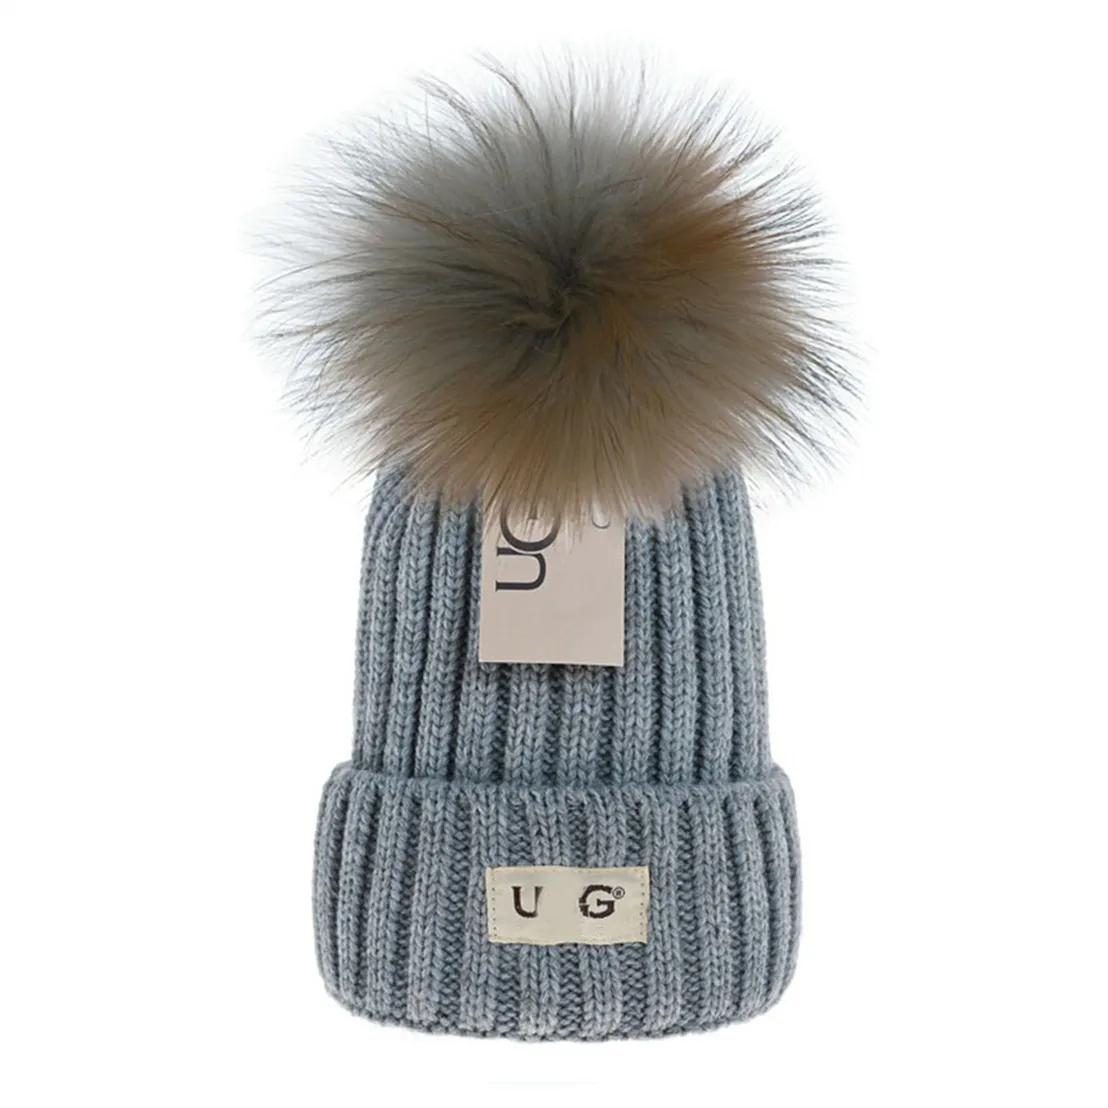 Nytt mode populärt stickat hatt lyxig mössa mössa vinter unisex ull blandade hattar g-10